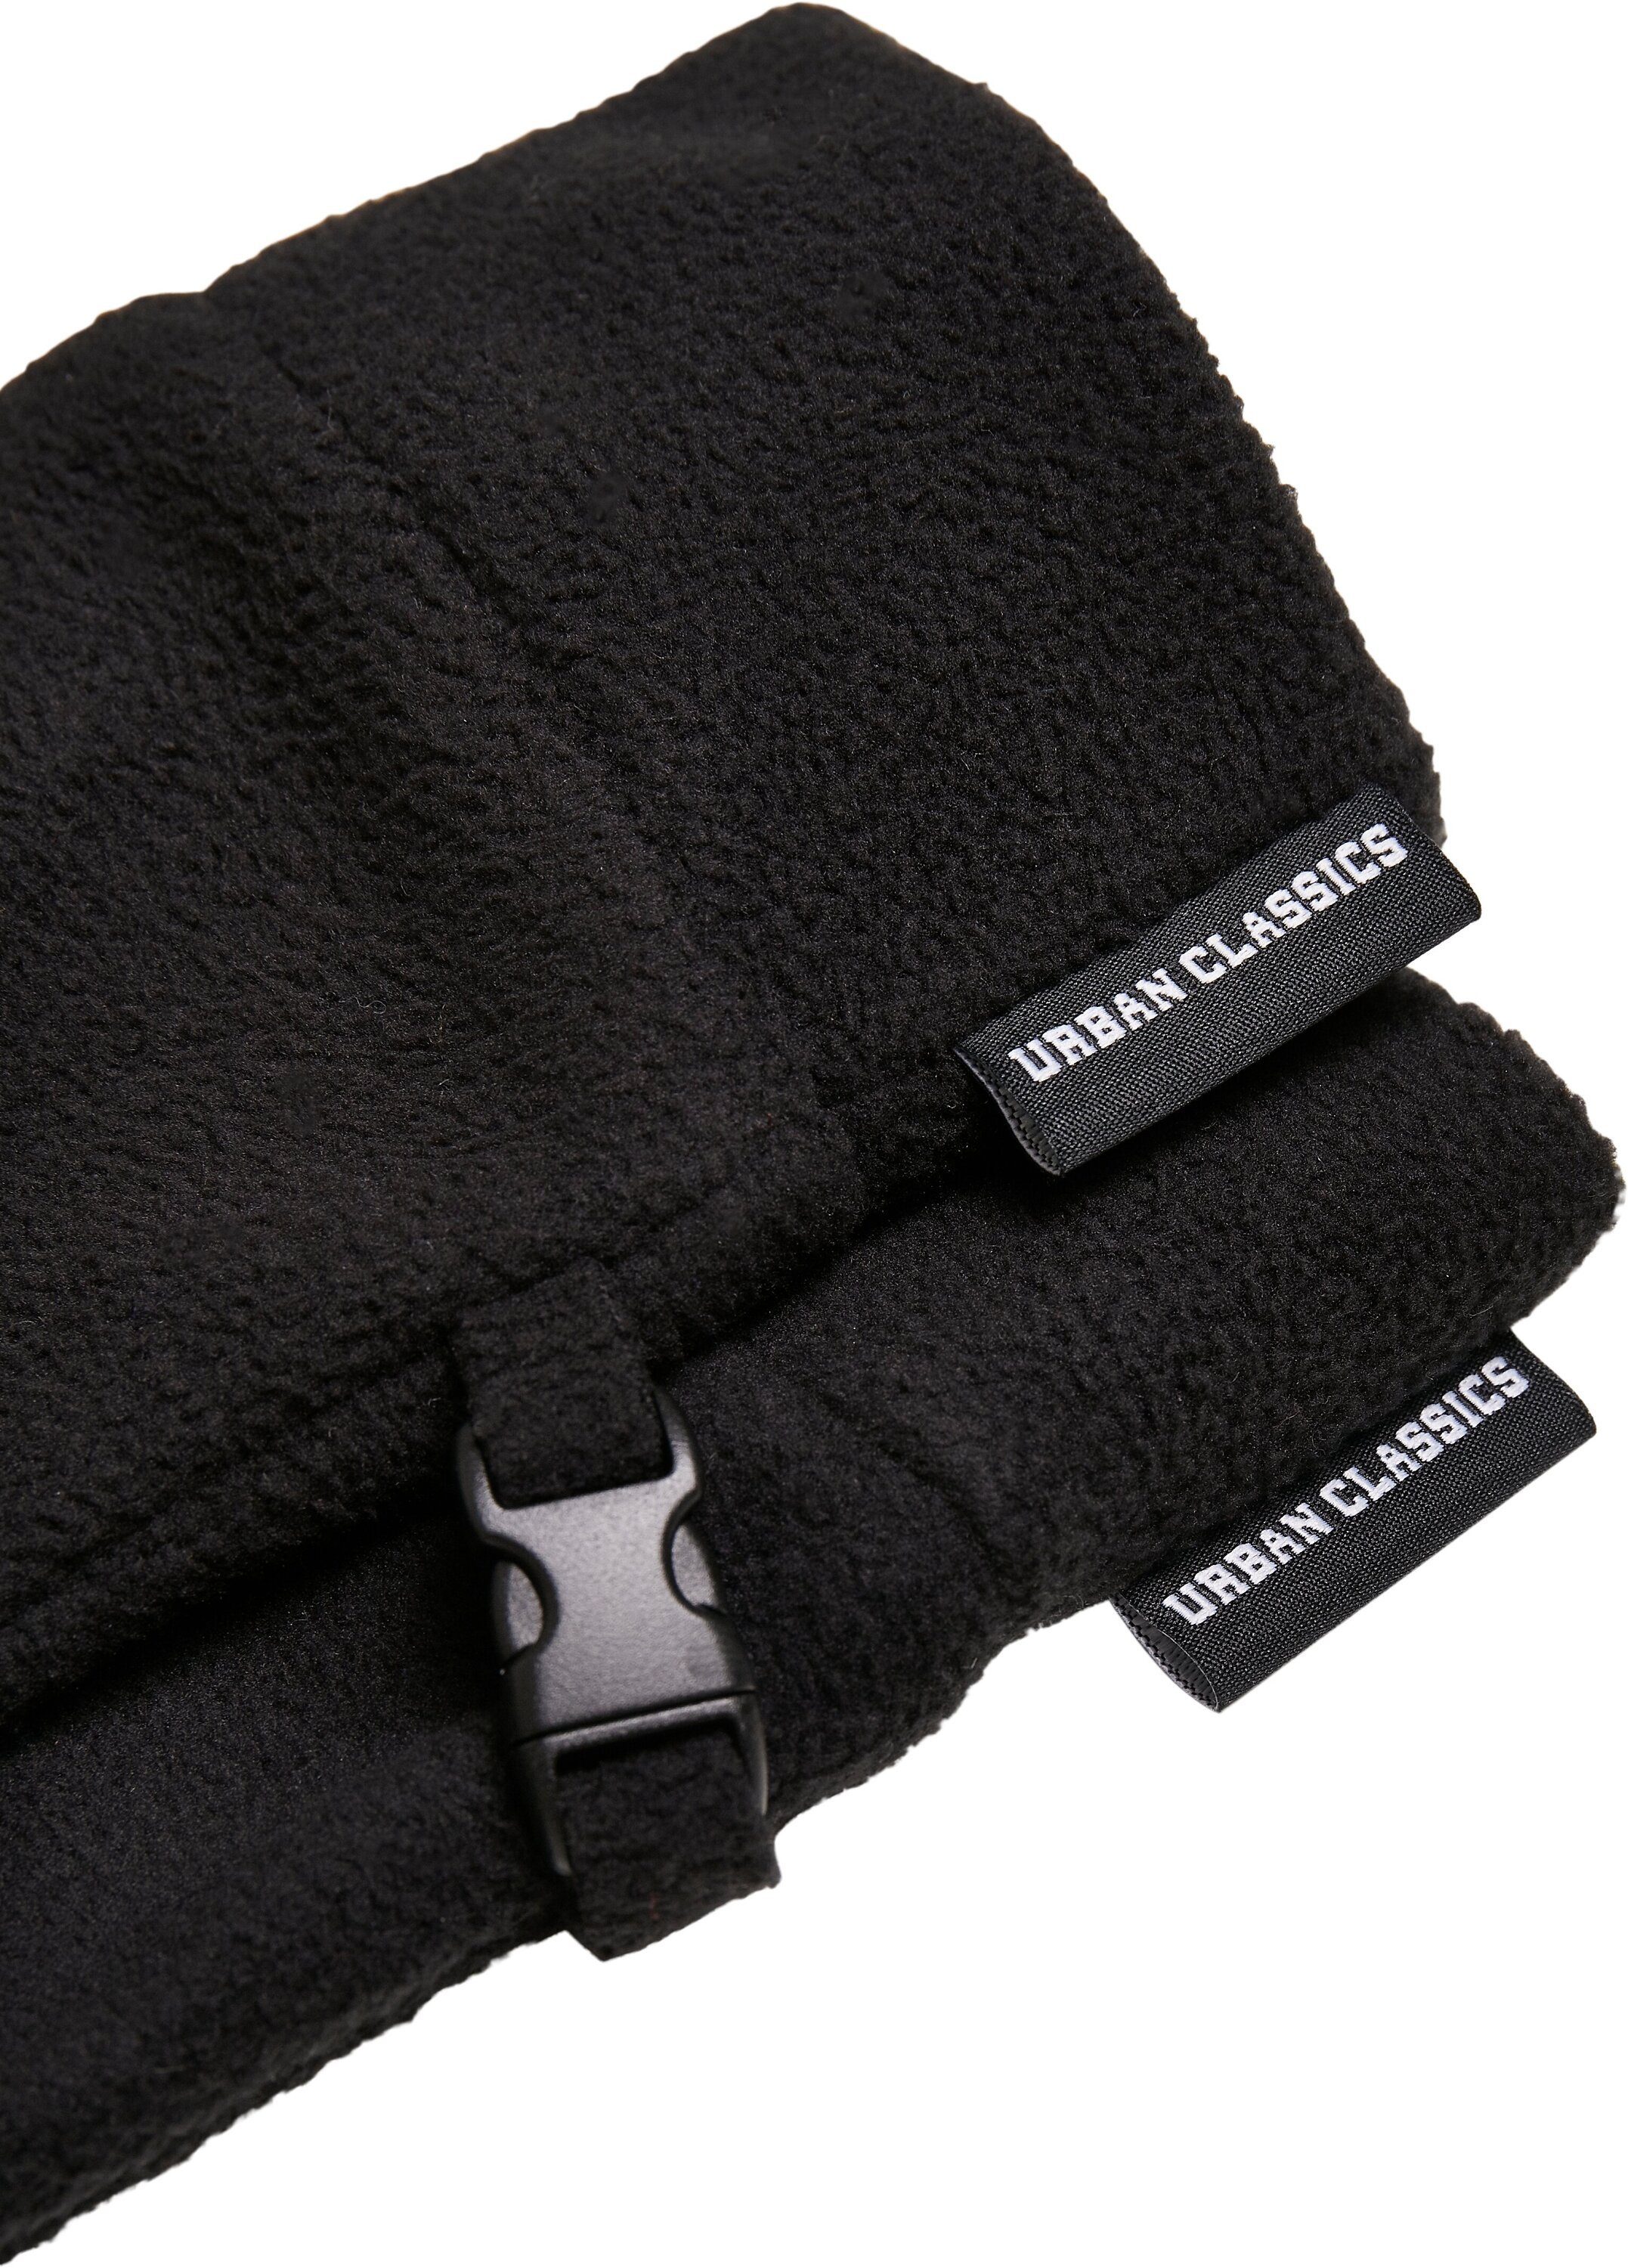 URBAN CLASSICS Winter Baumwollhandschuhe Fleece Accessoires Set